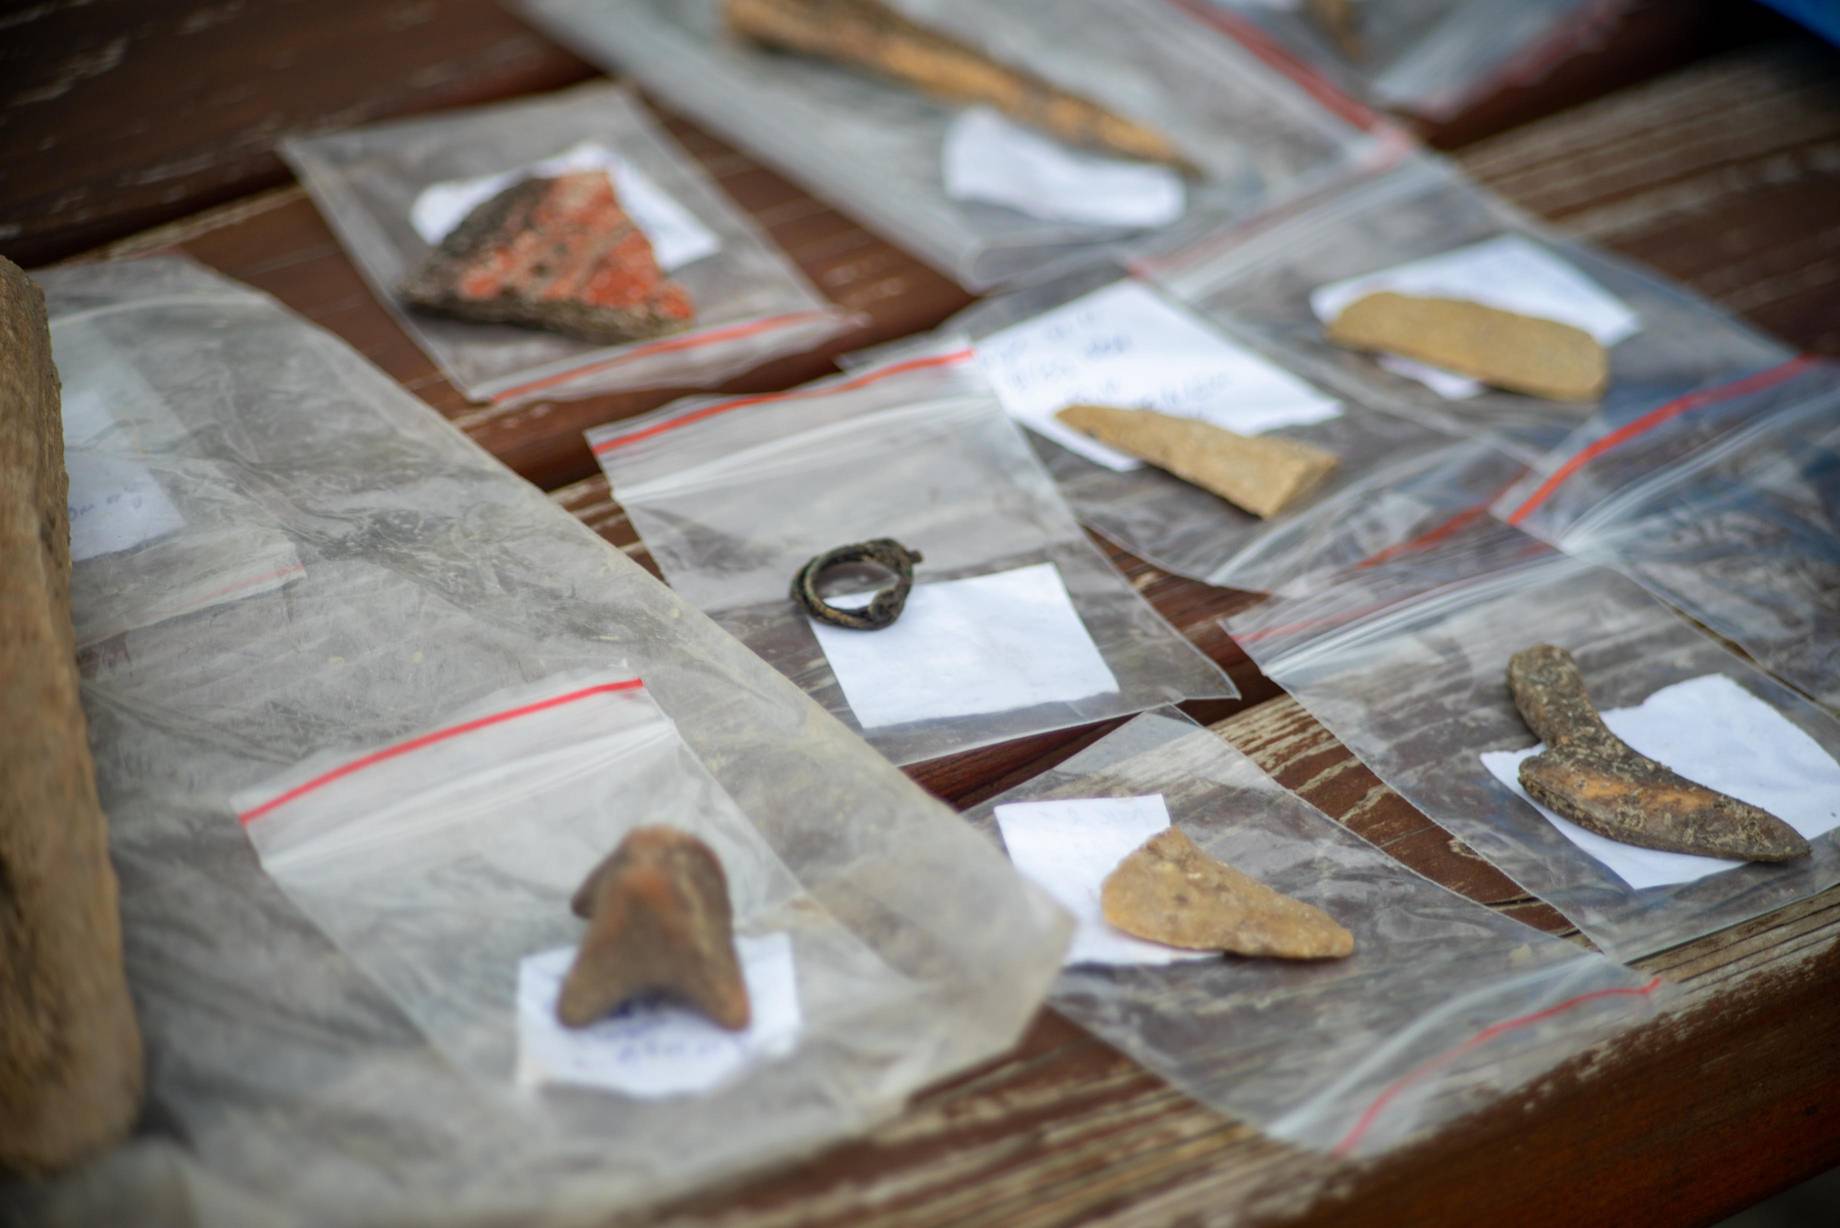 Намерени са множество предмети с белези на археологически обектиСлужители на